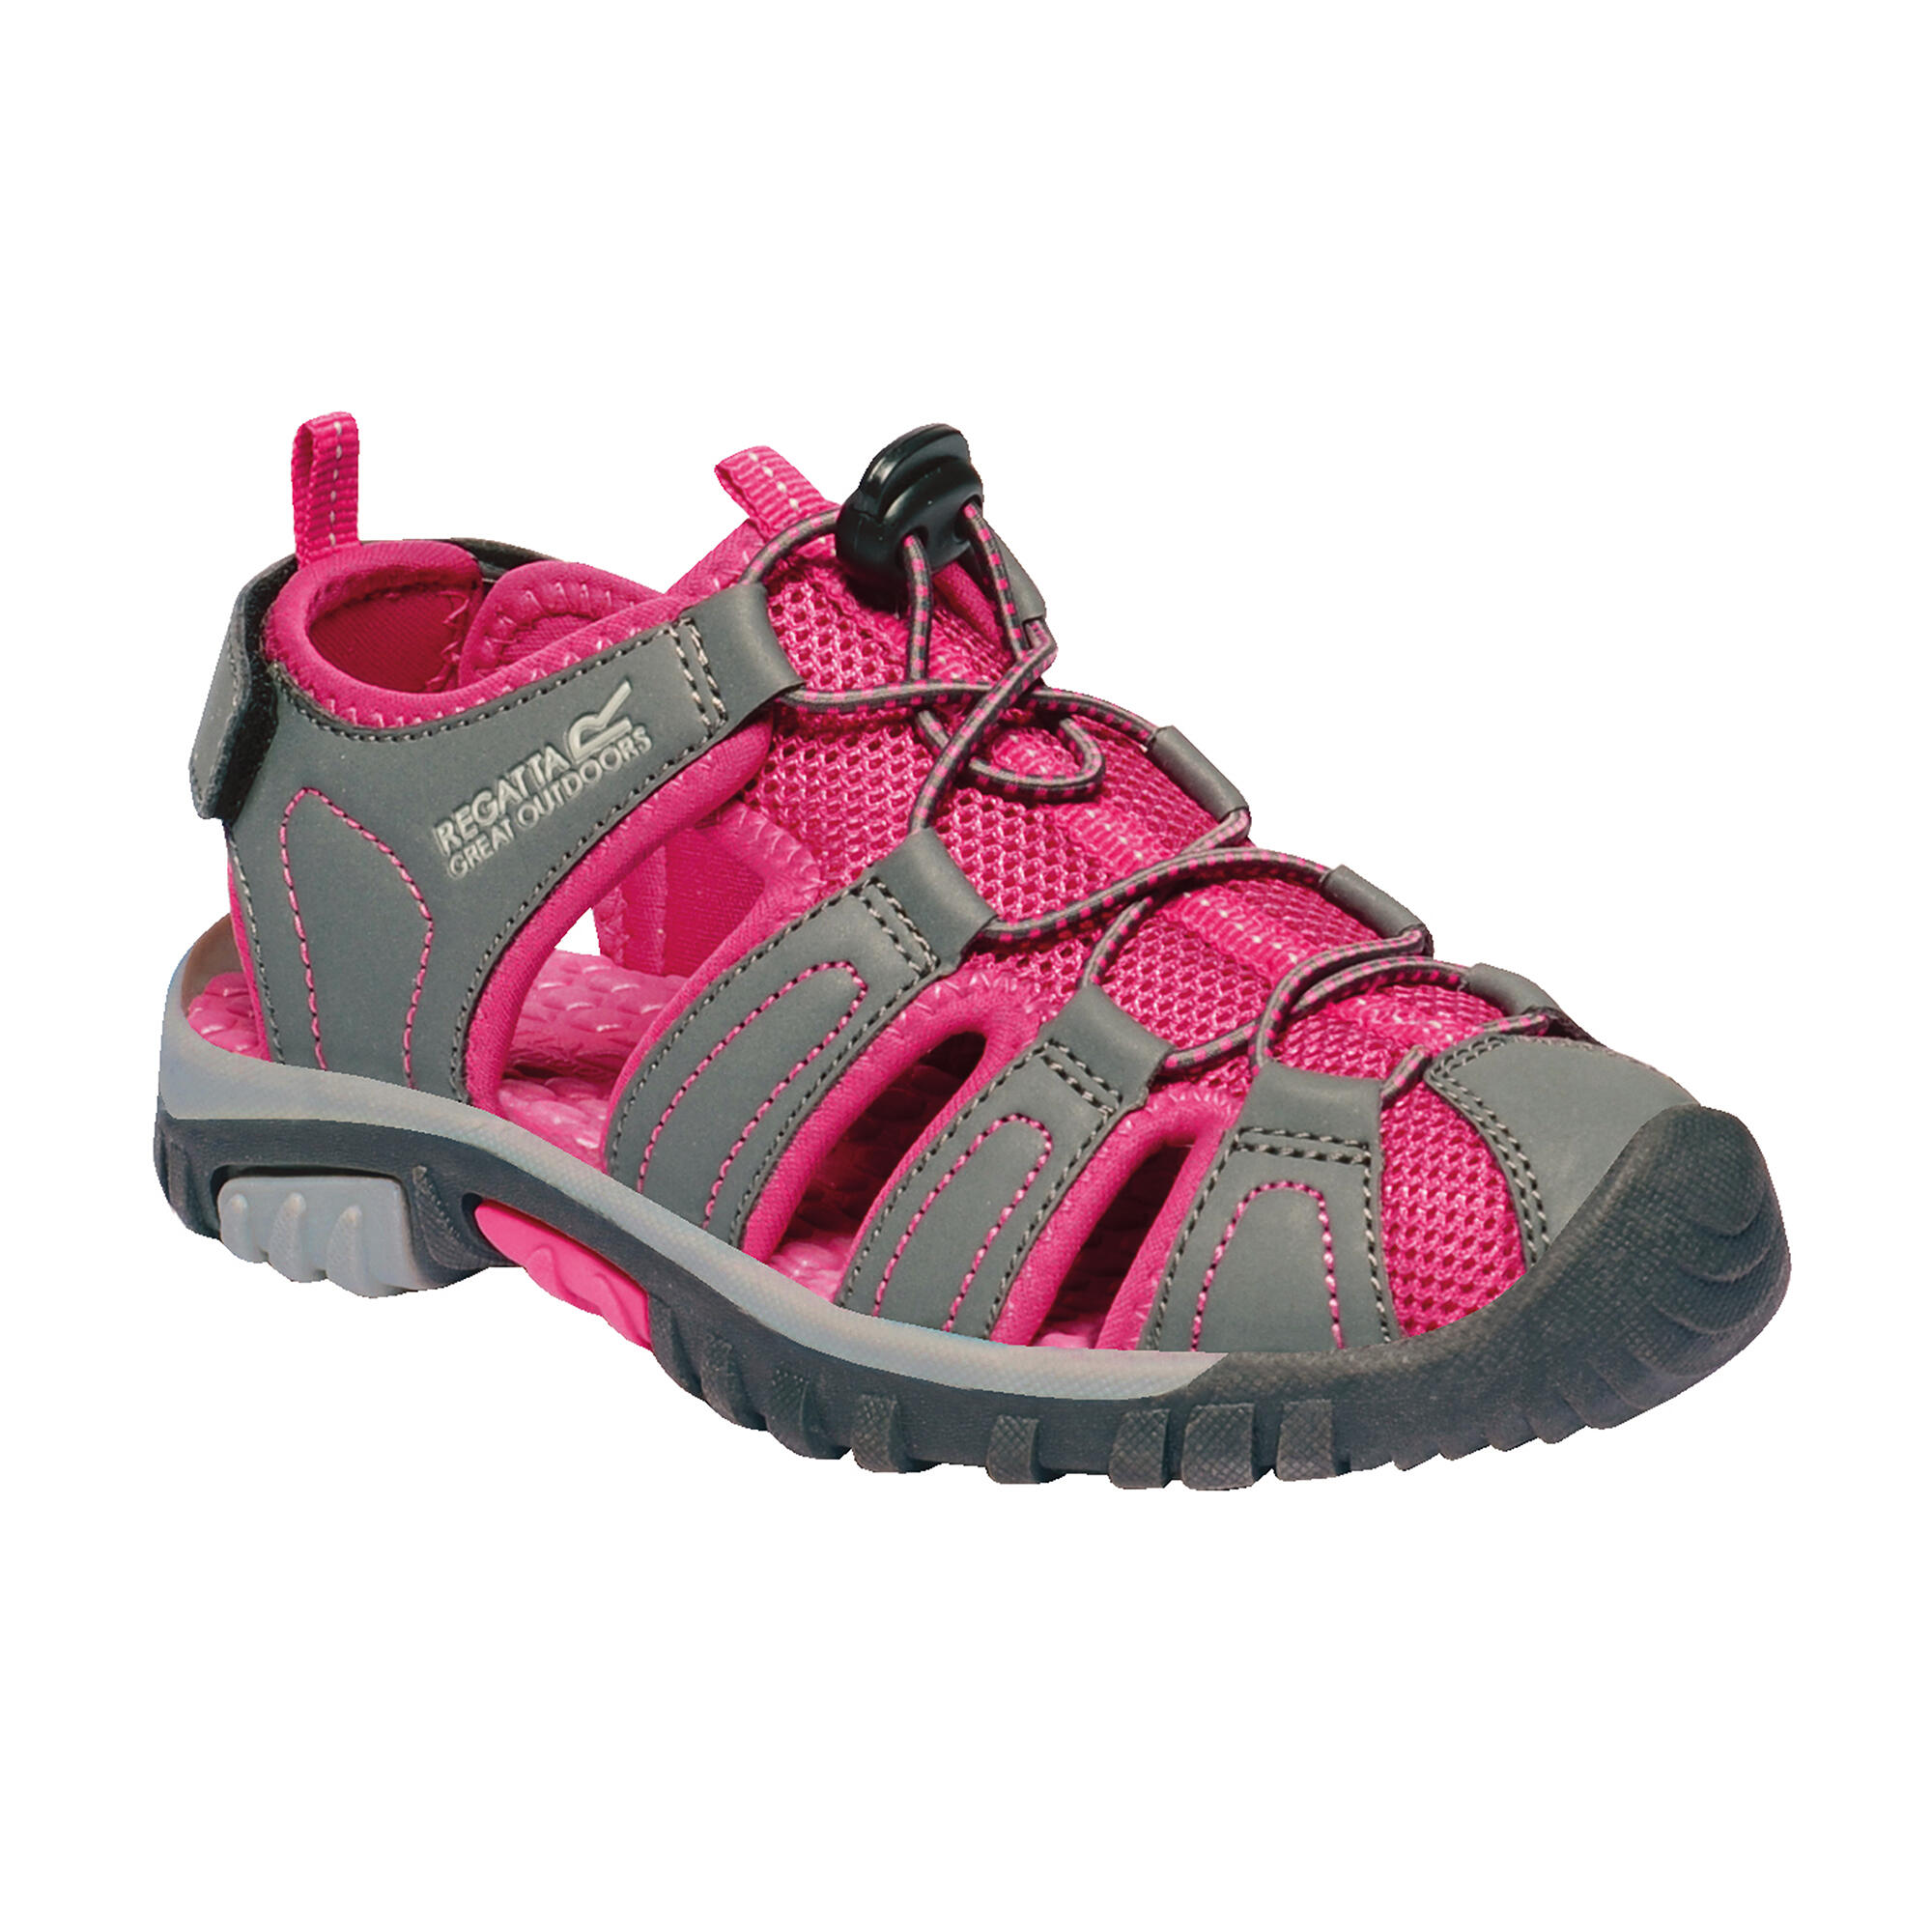 Westshore Junior Kids Walking Sandals - Granite Grey / Pink 2/5